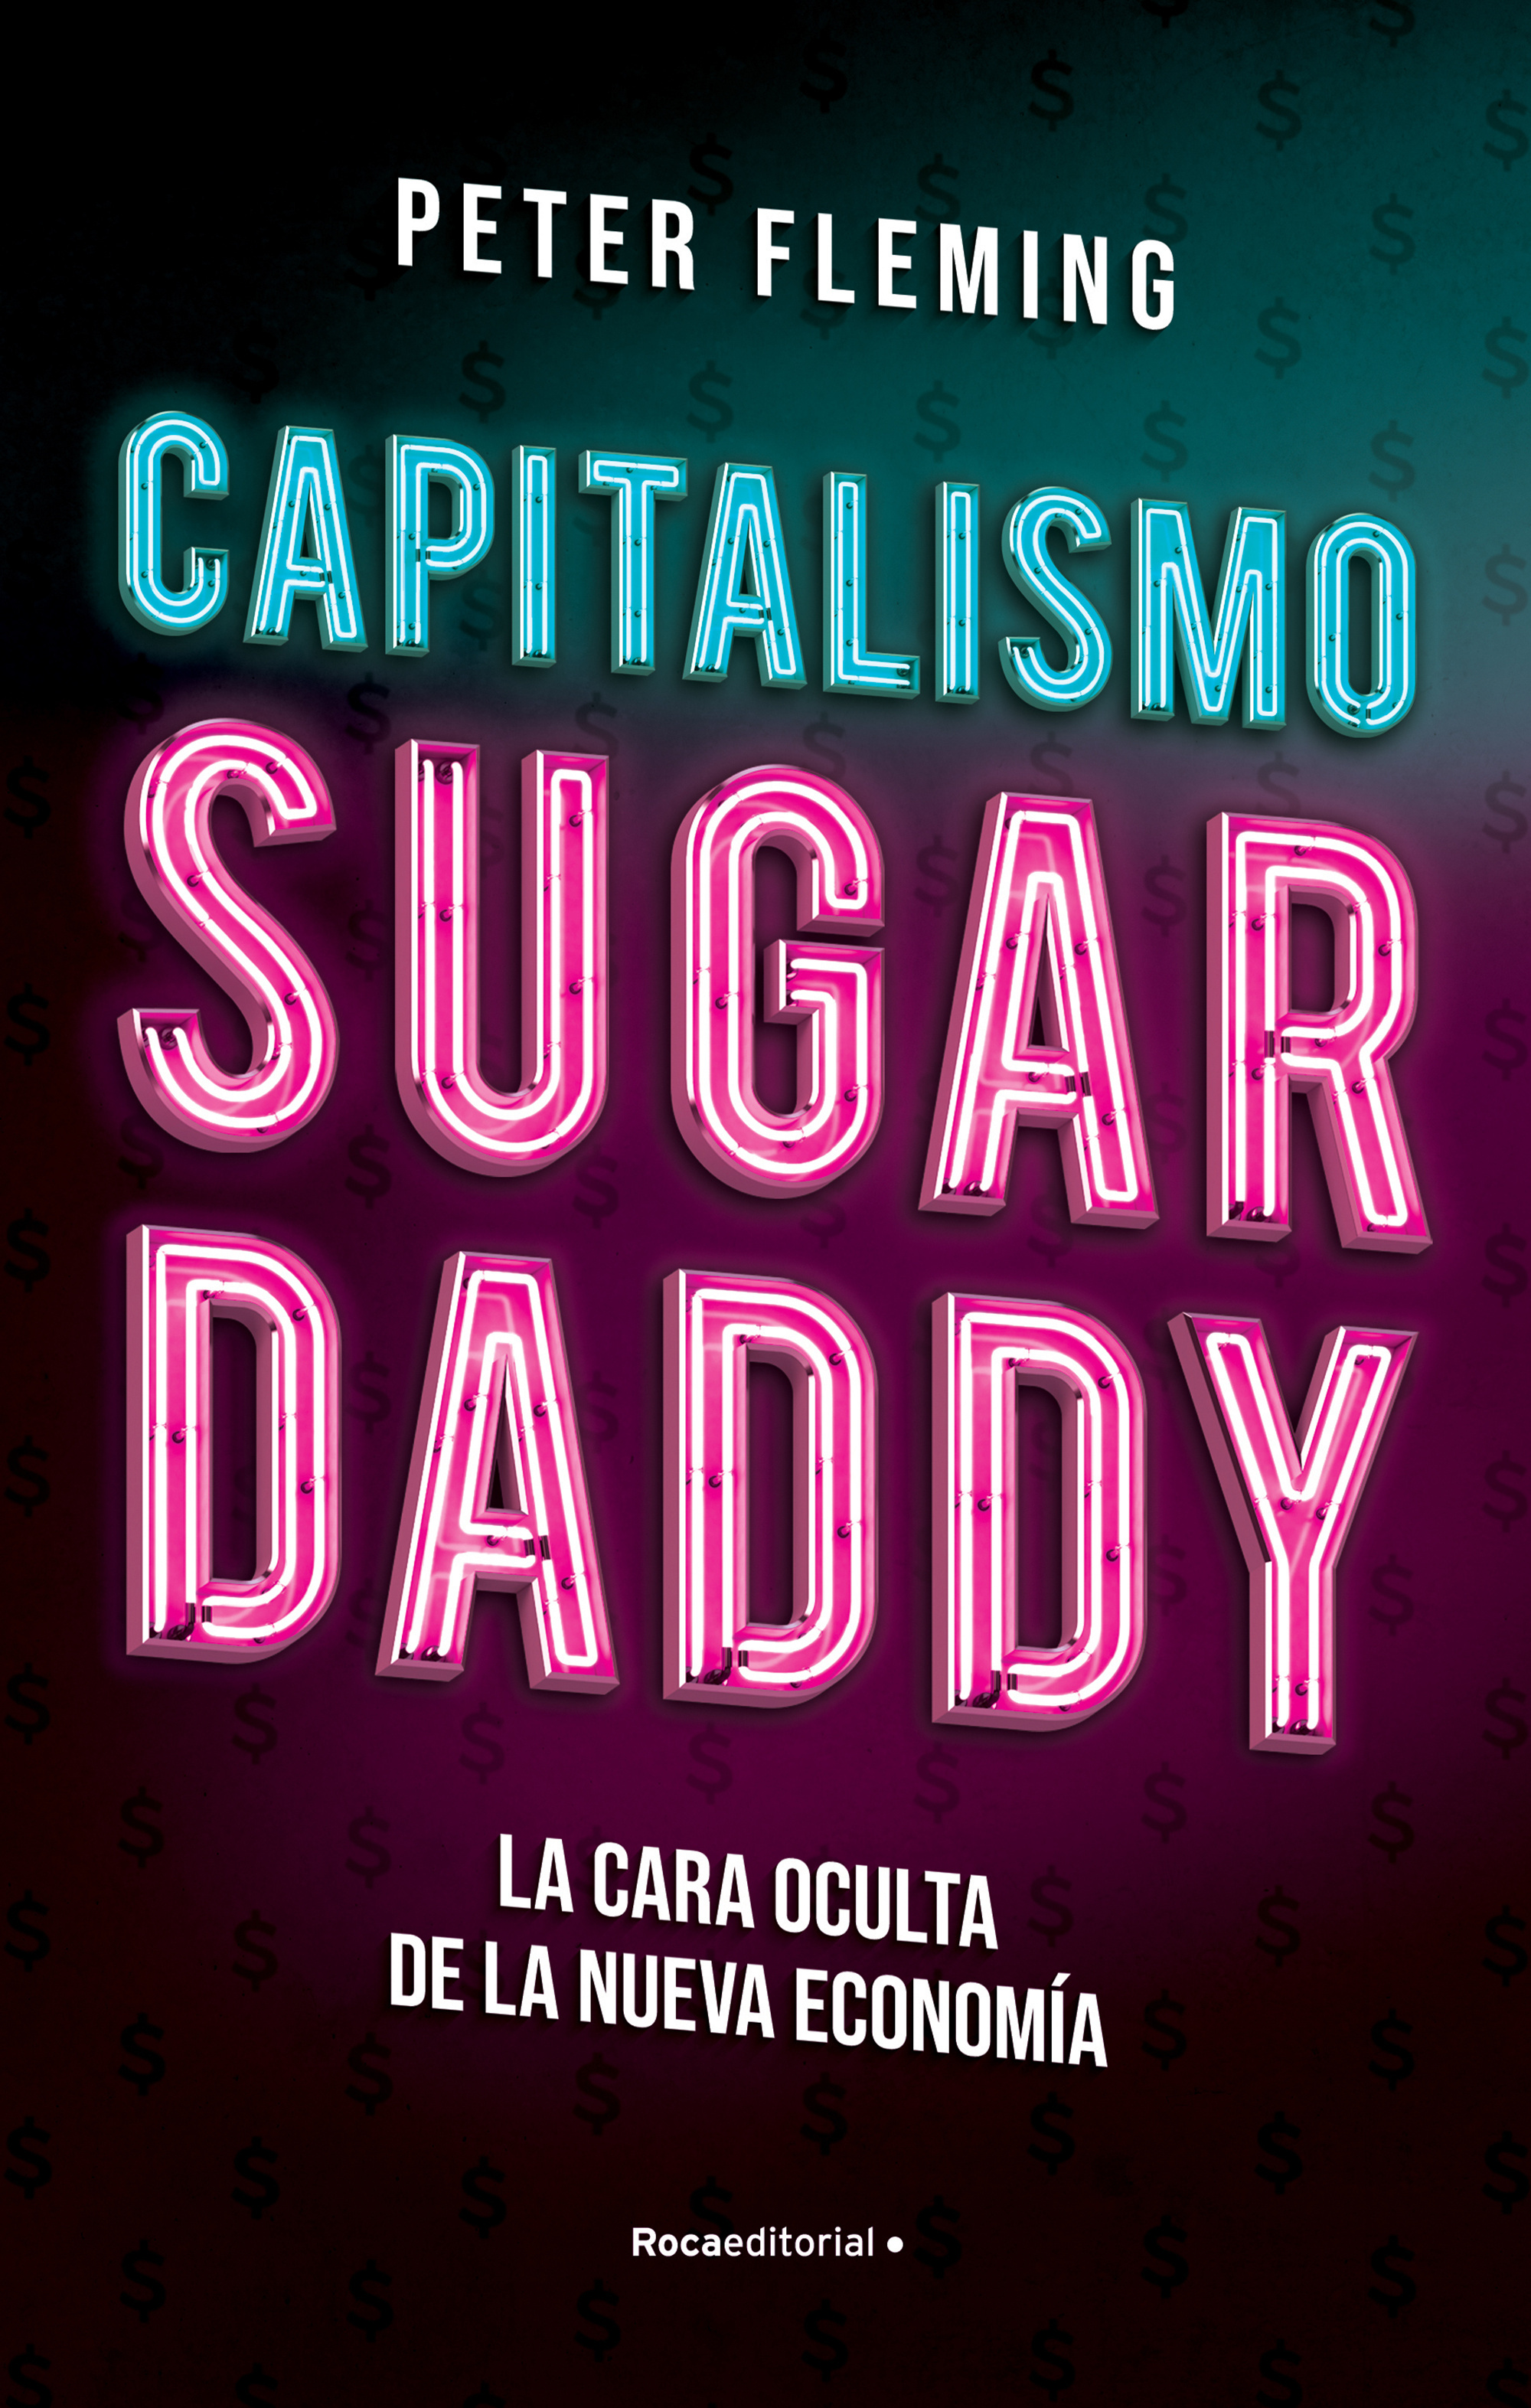 Capitalismo sugar daddy. 9788417968175